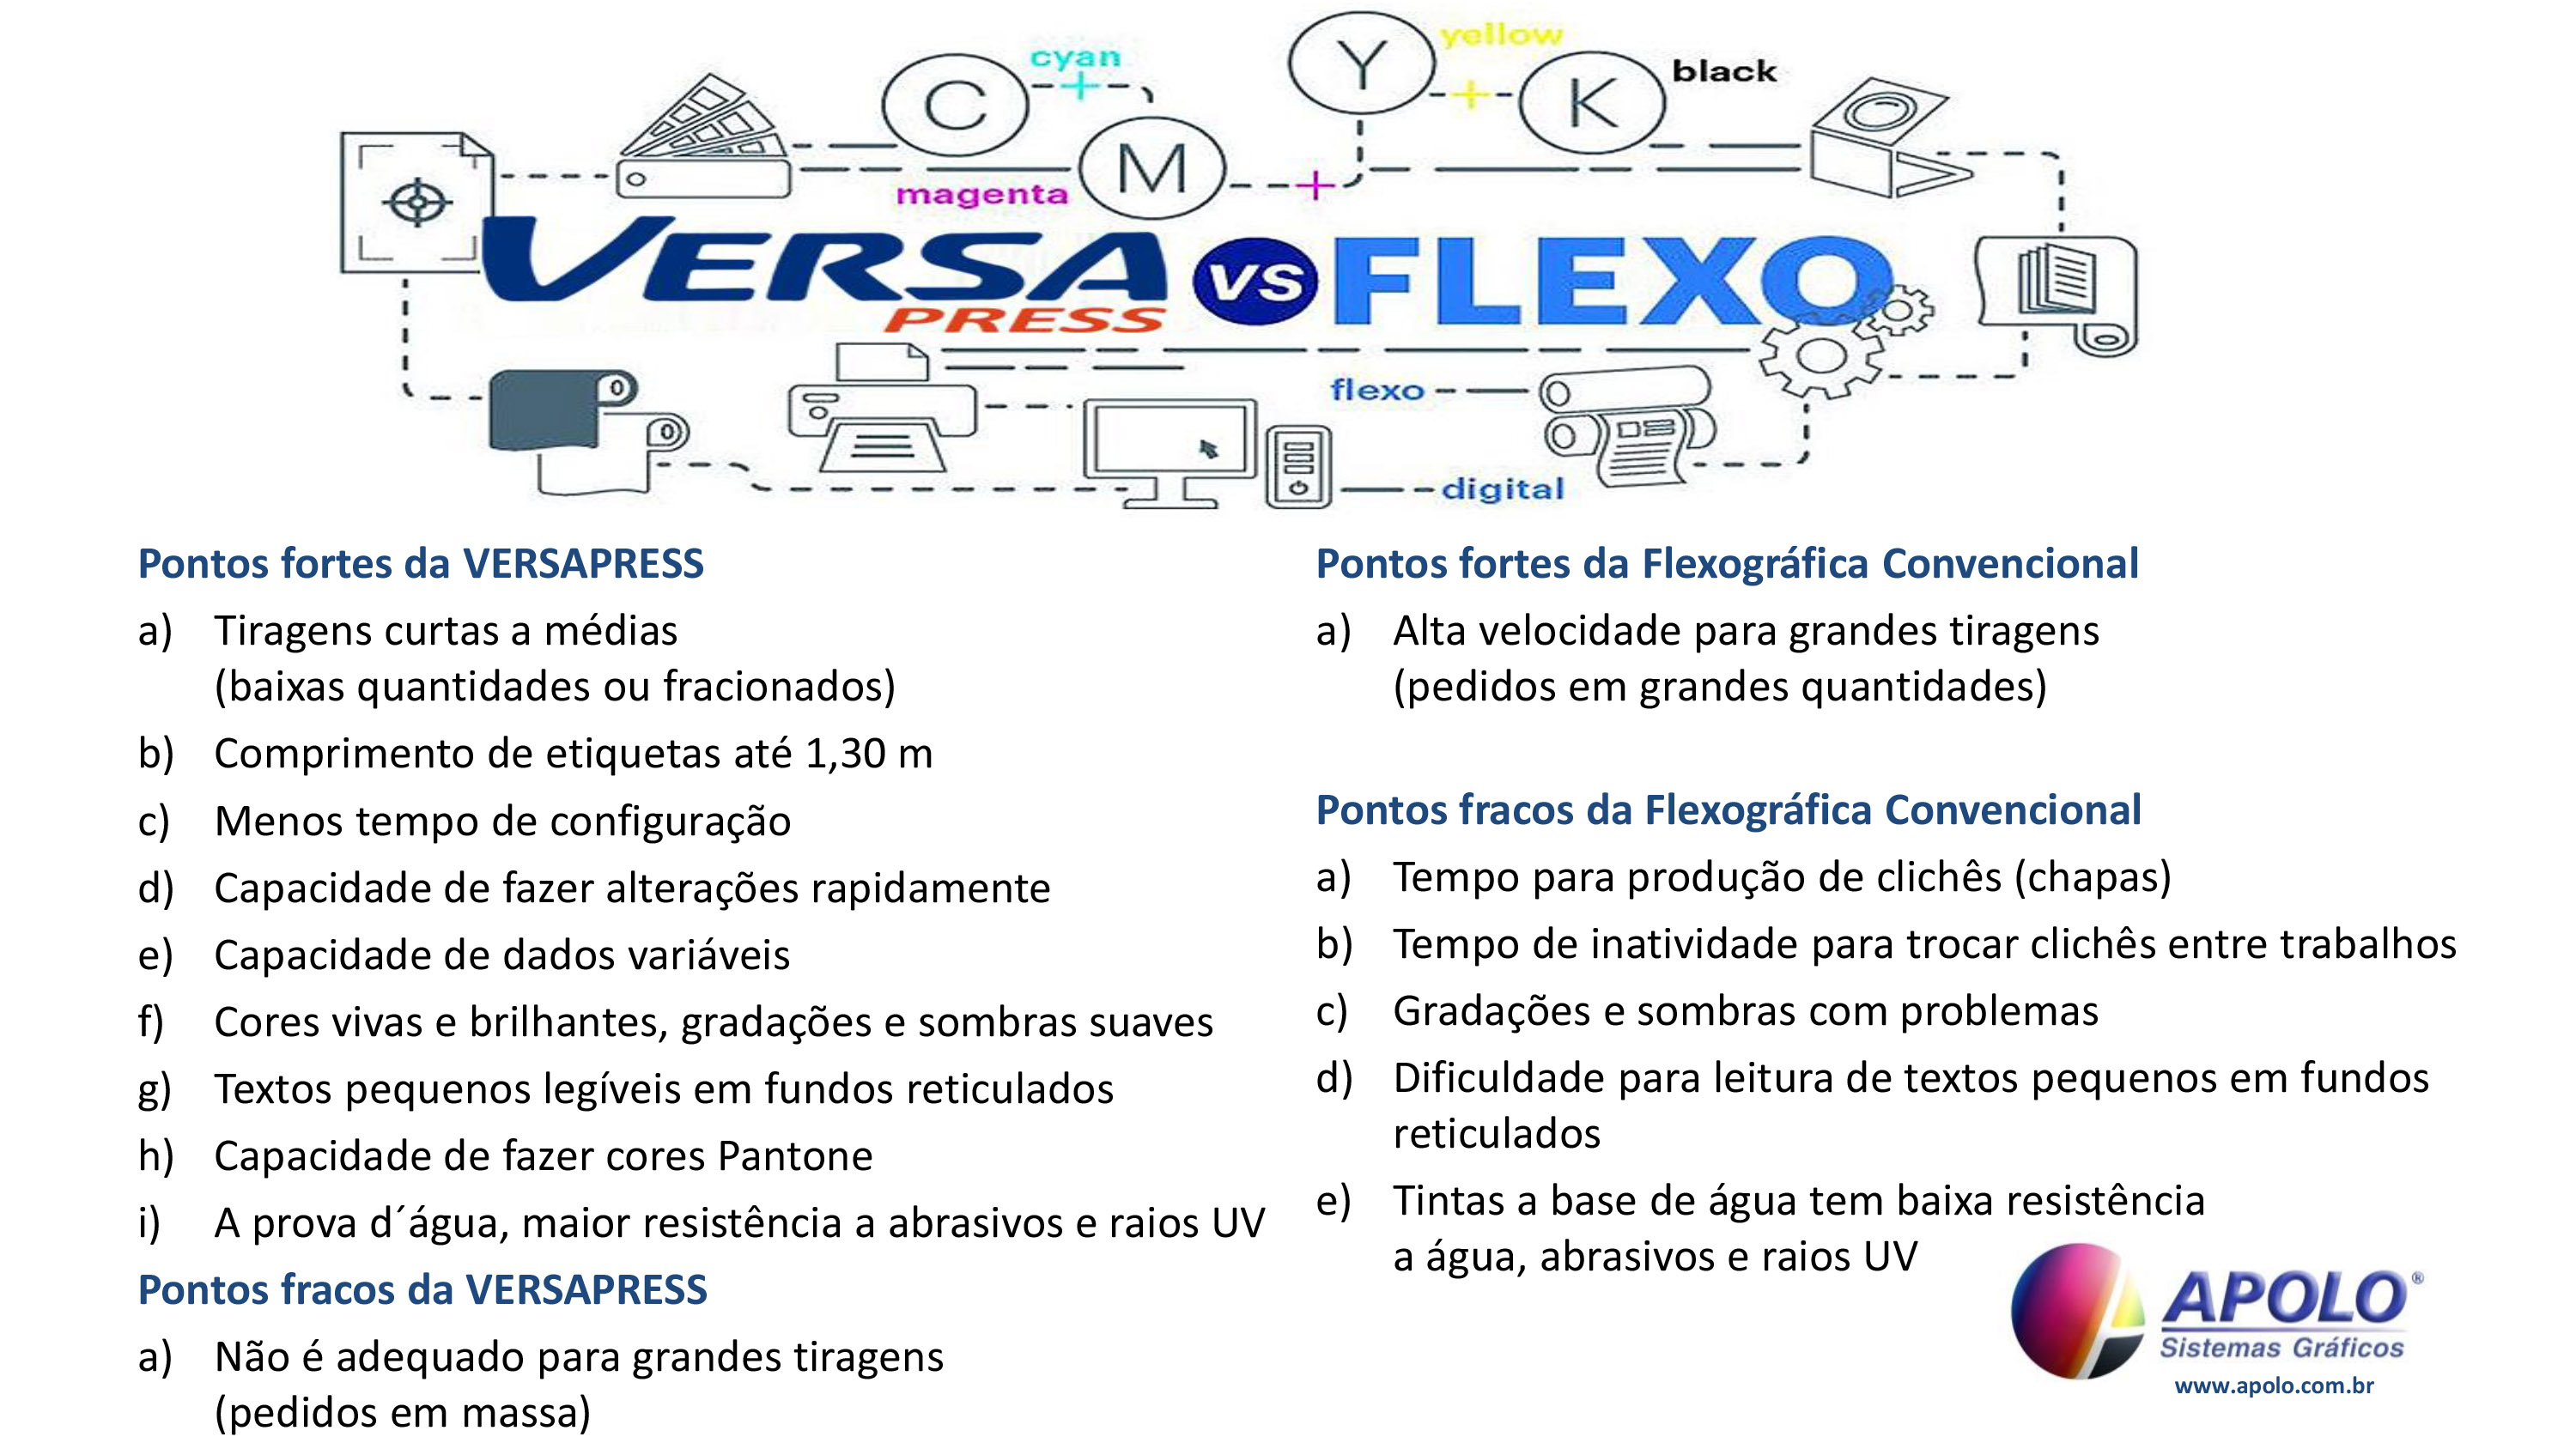 VersaPress - Versa vs Flexo